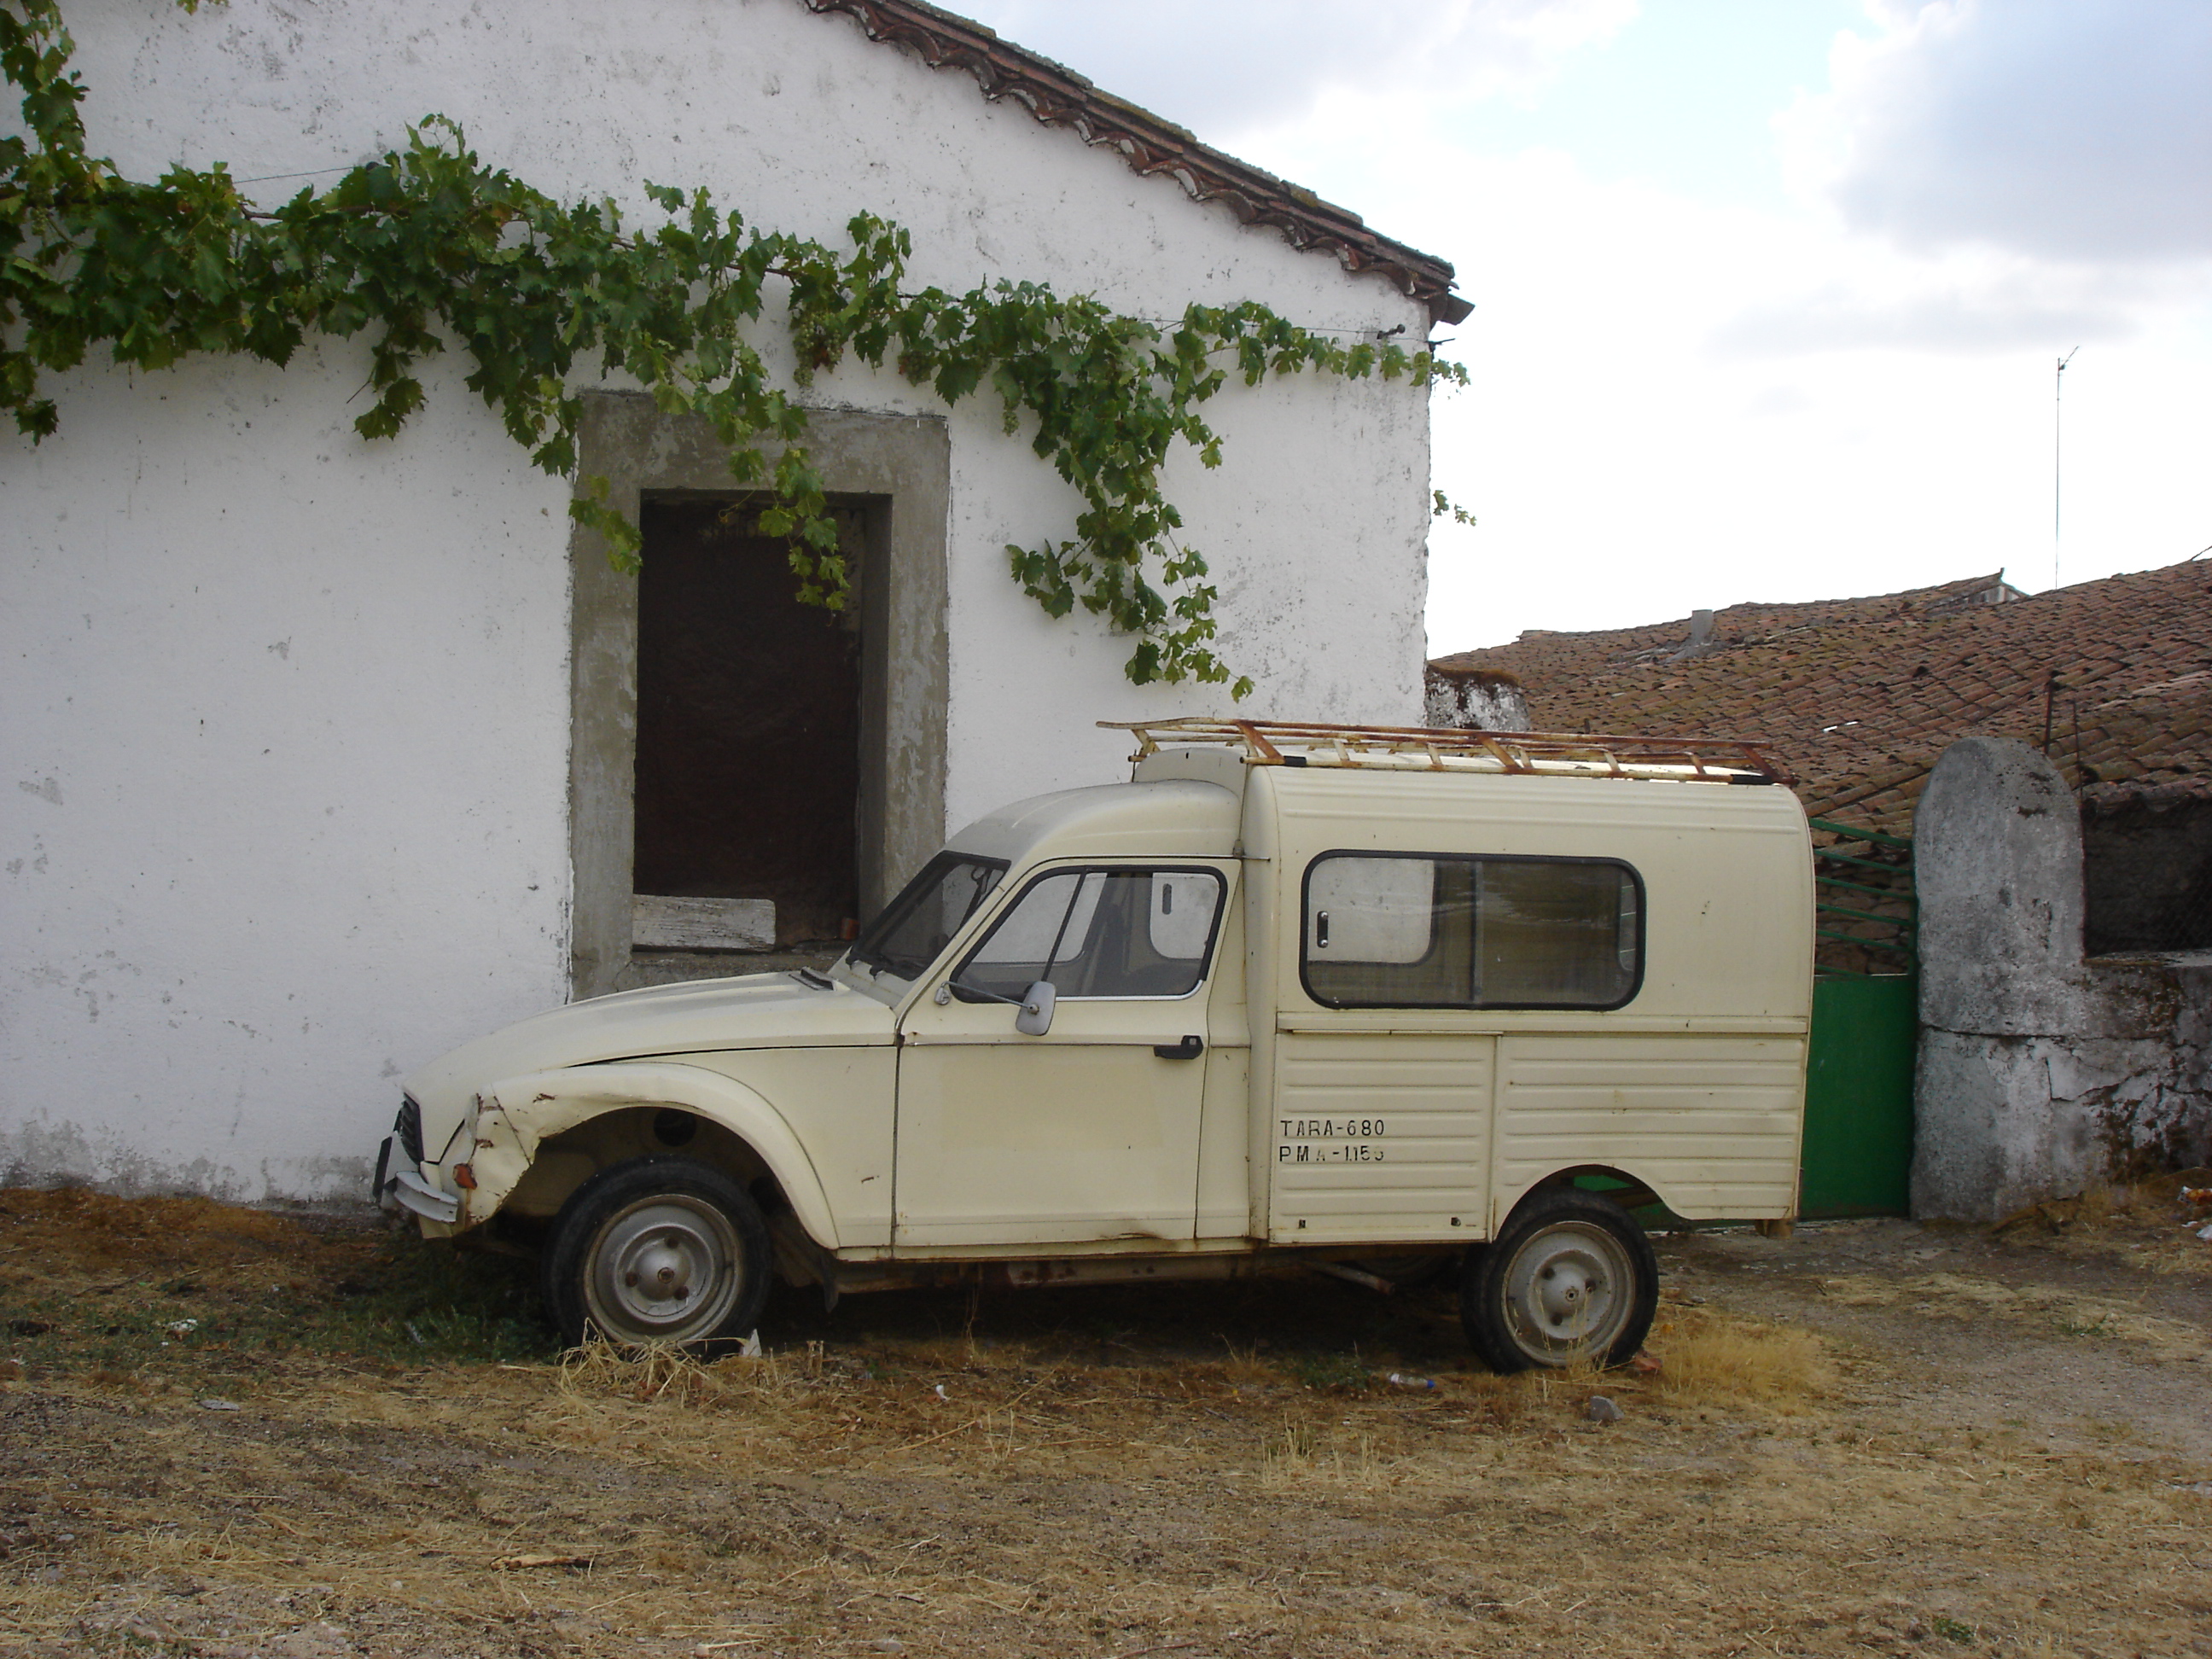 Esta imagen muestra un coche antiguo